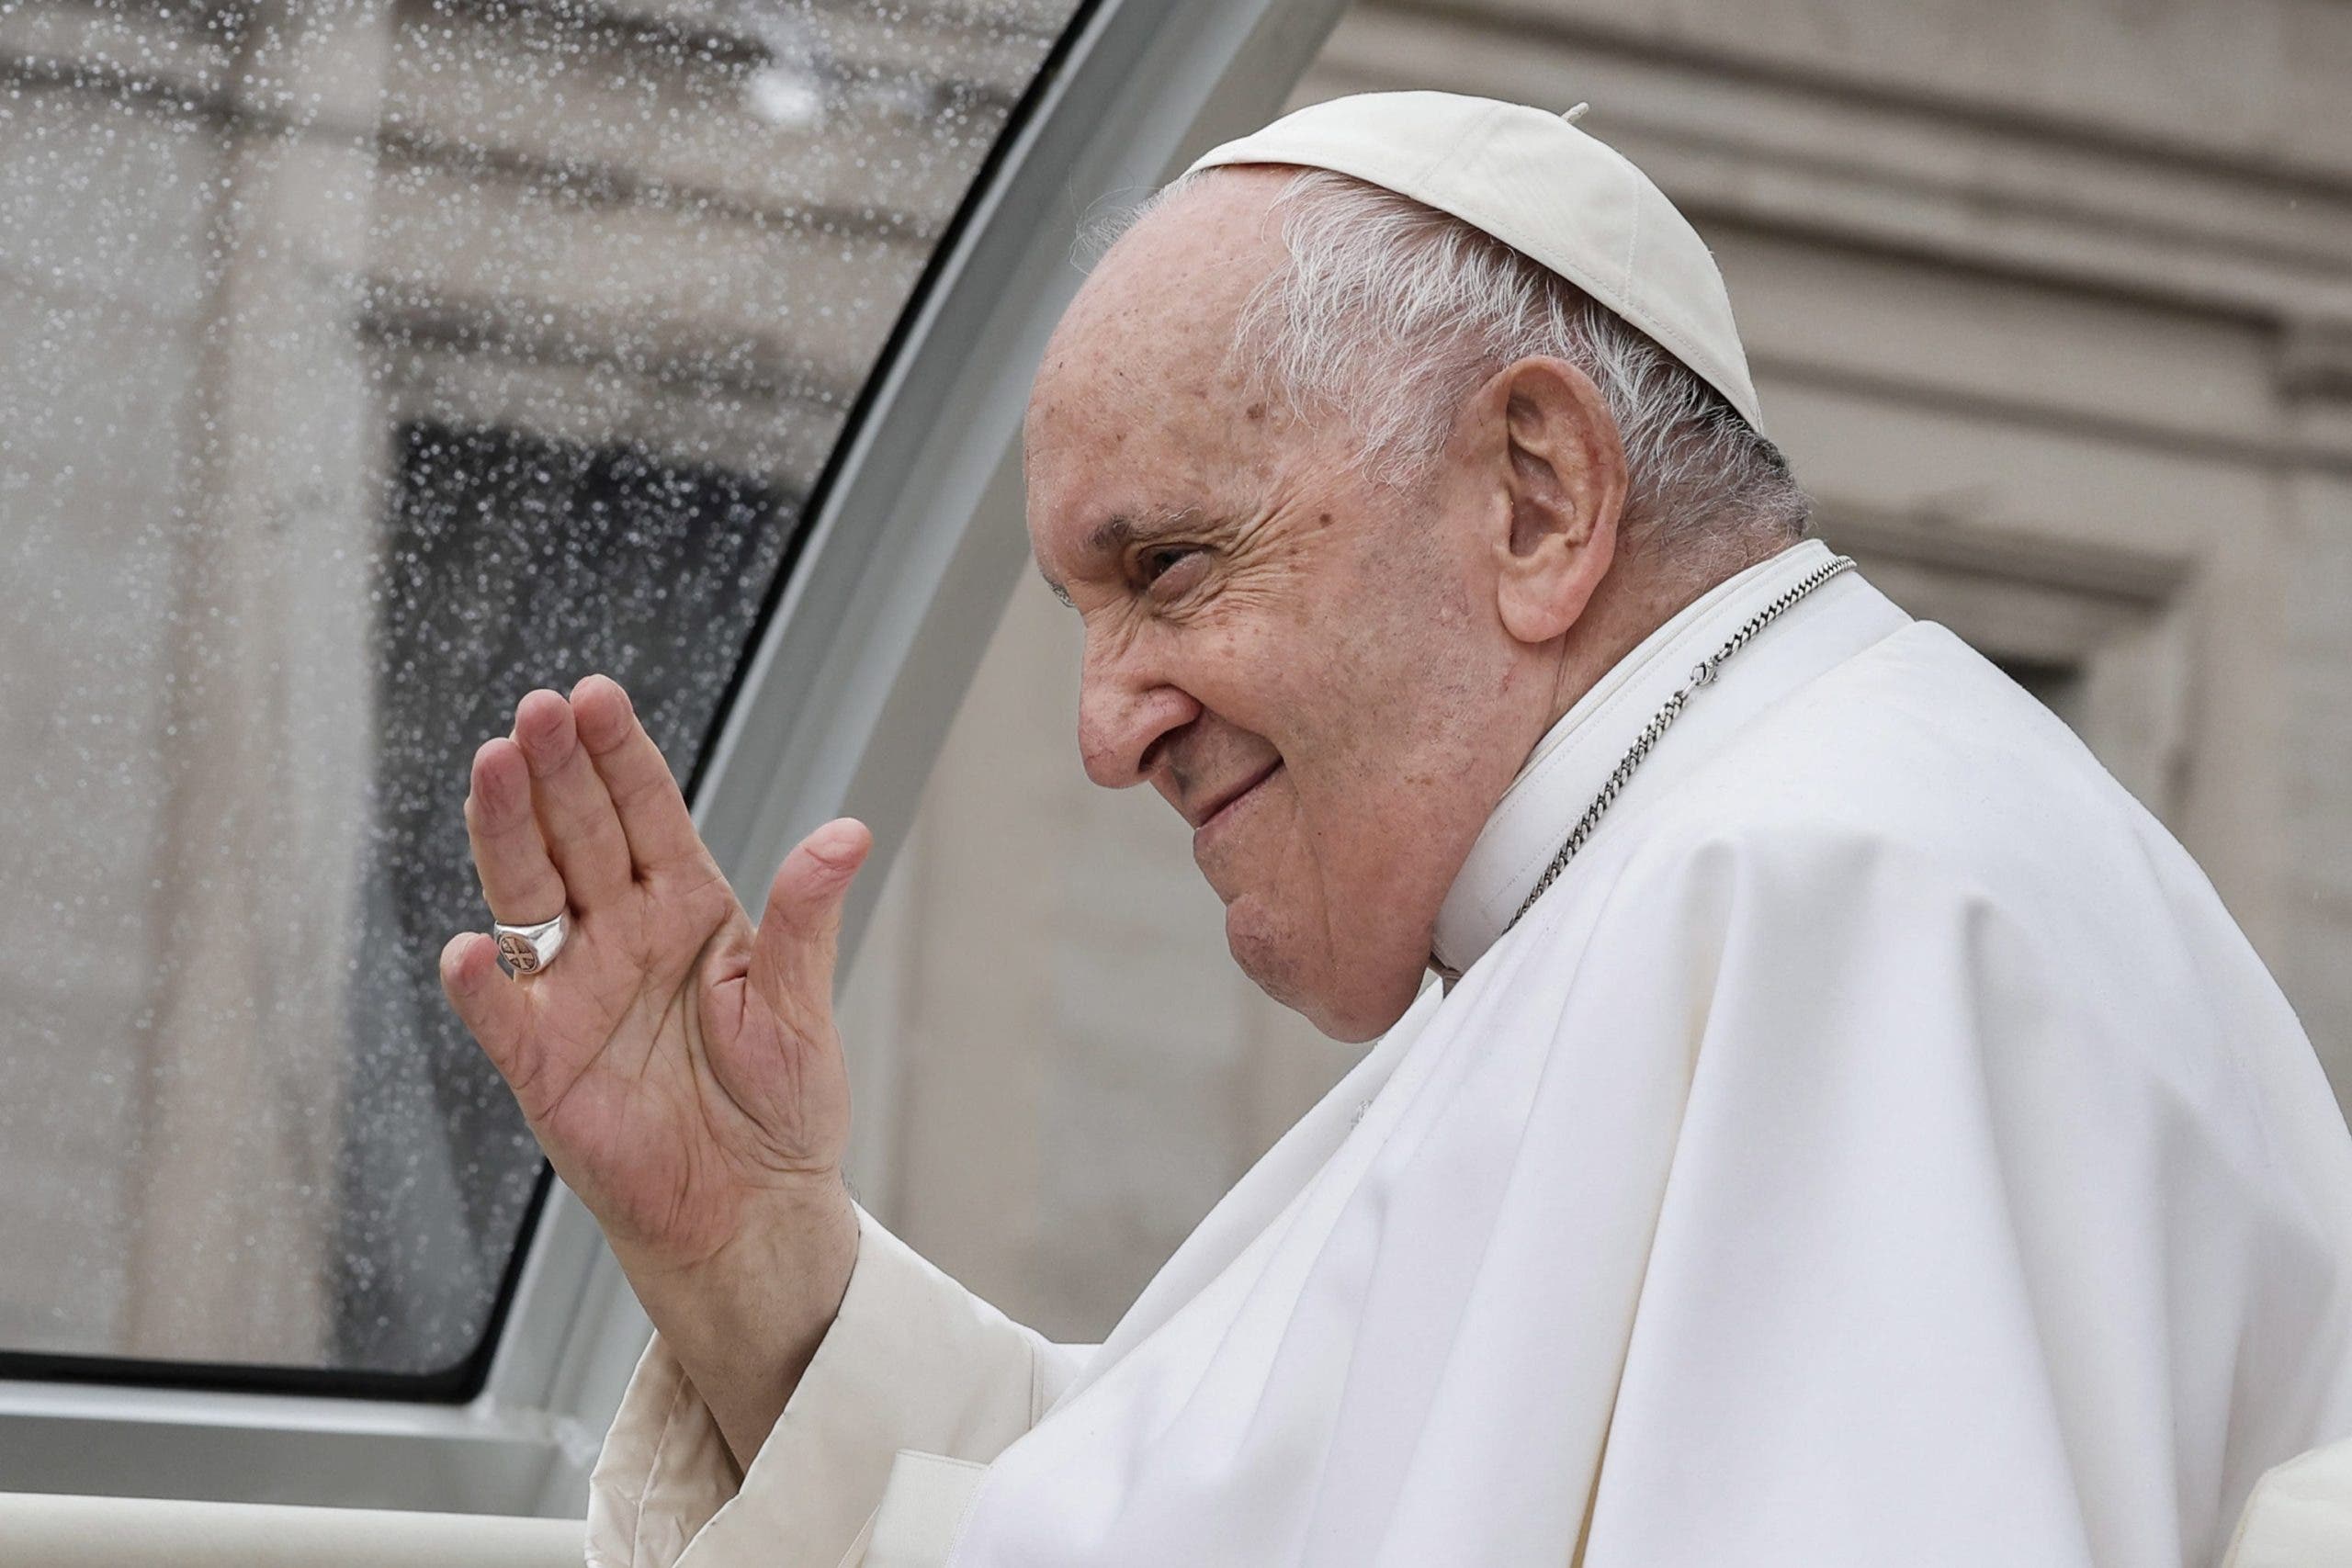 El papa critica la corrupción política y económica que agrava las crisis alimentarias